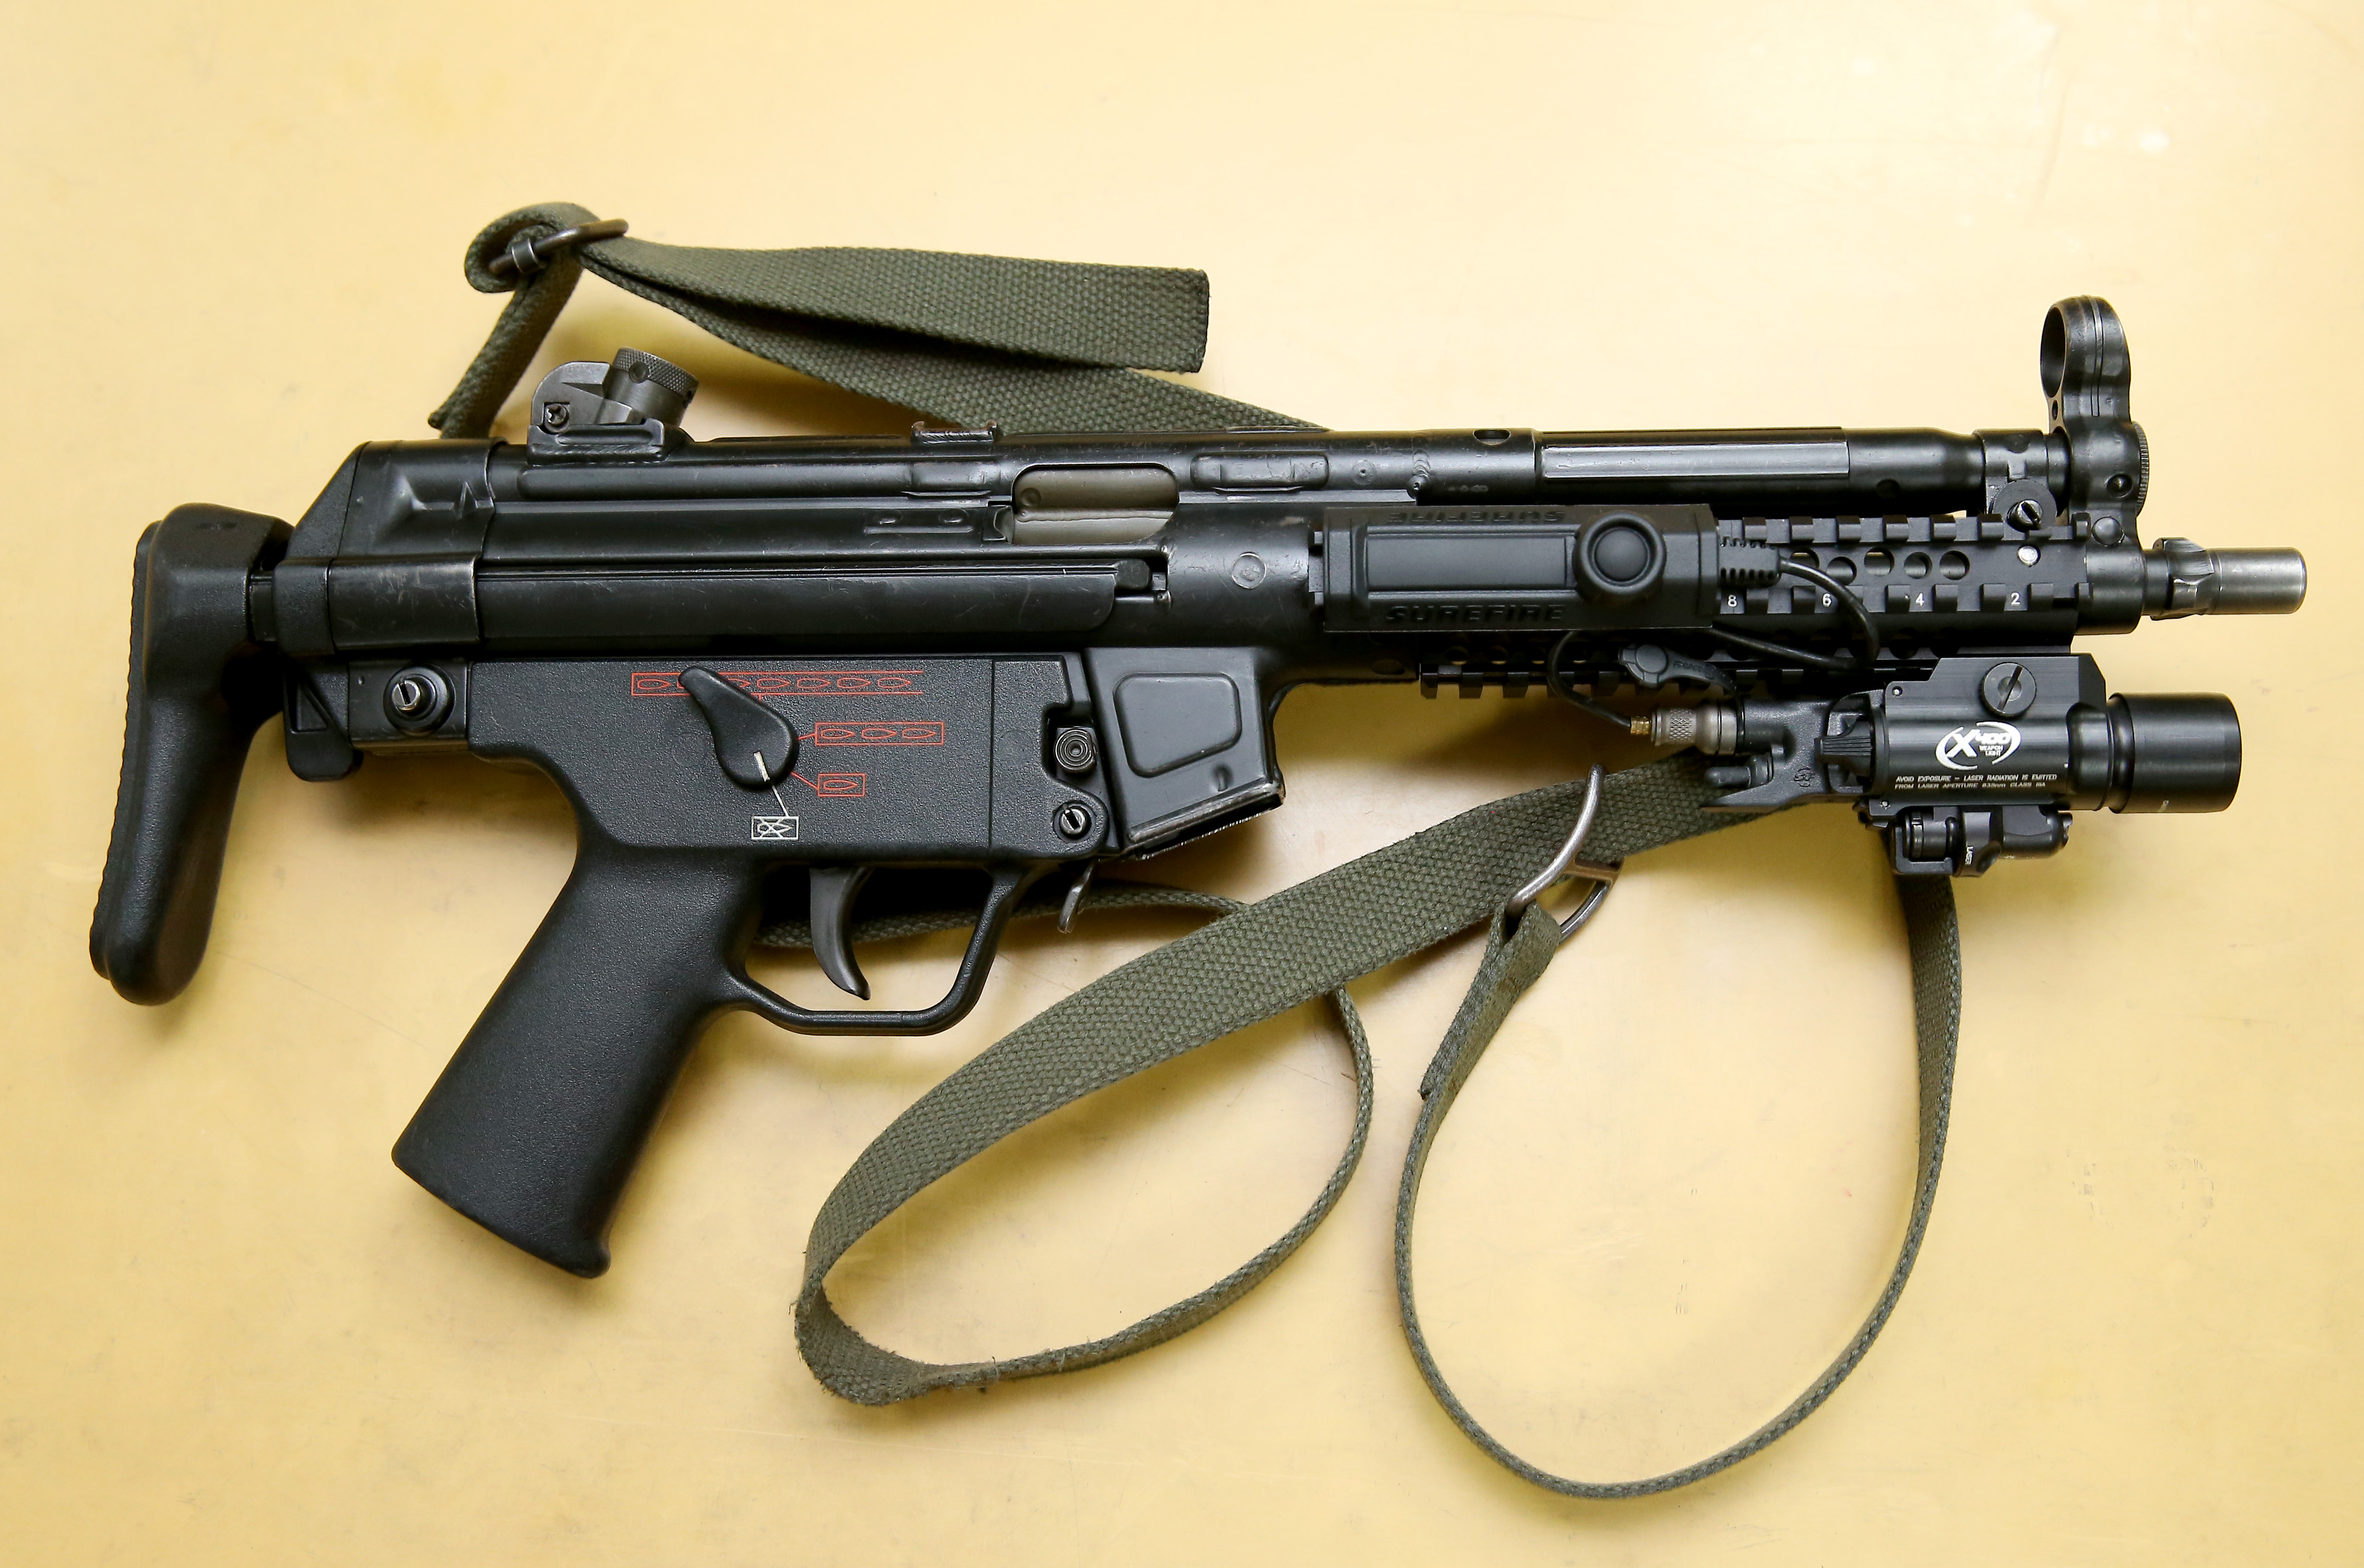 MP5冲锋枪外型。示意图(非与本案有关)／联合报资料照